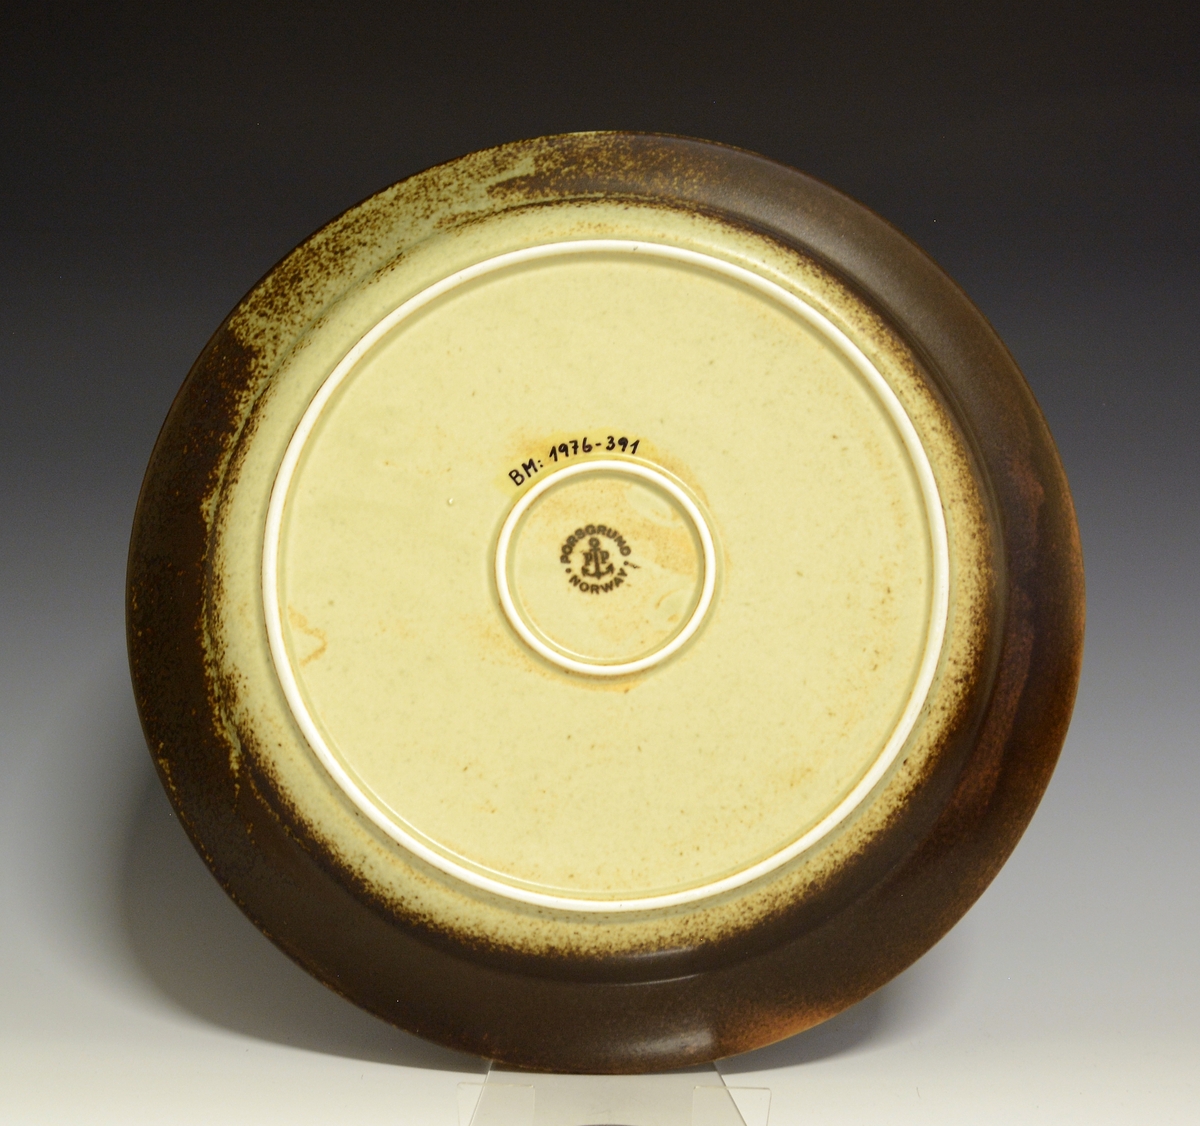 Prot: Fat av porselen, rundt. "Lava" lansert i 1972 av Porsgrunds Porselænsfabrik. Farver: Fra mørk brunt-lysebrunt-grønnaktig-en slags beige.
Modell: 2440/1, Eystein.
Dekor: 885258, Lava